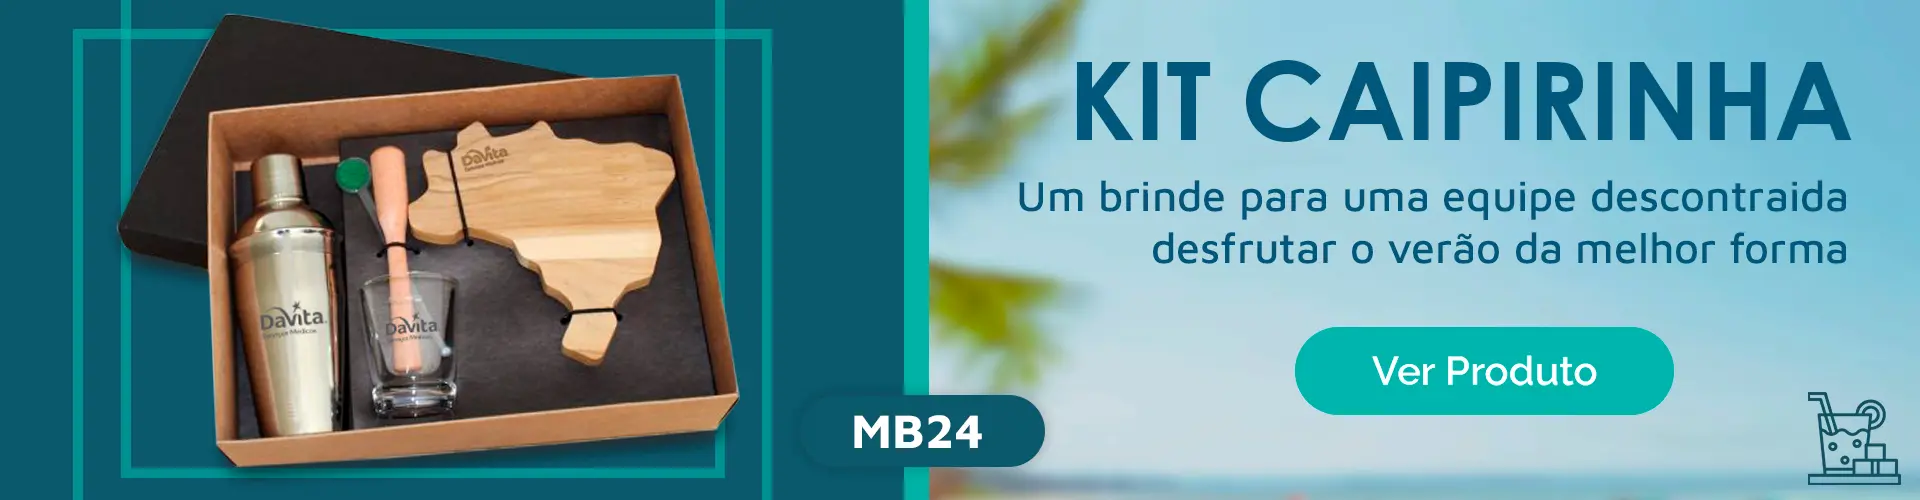 Banner Kit Caipirinha Personalizado - Matbrindes Personalizados